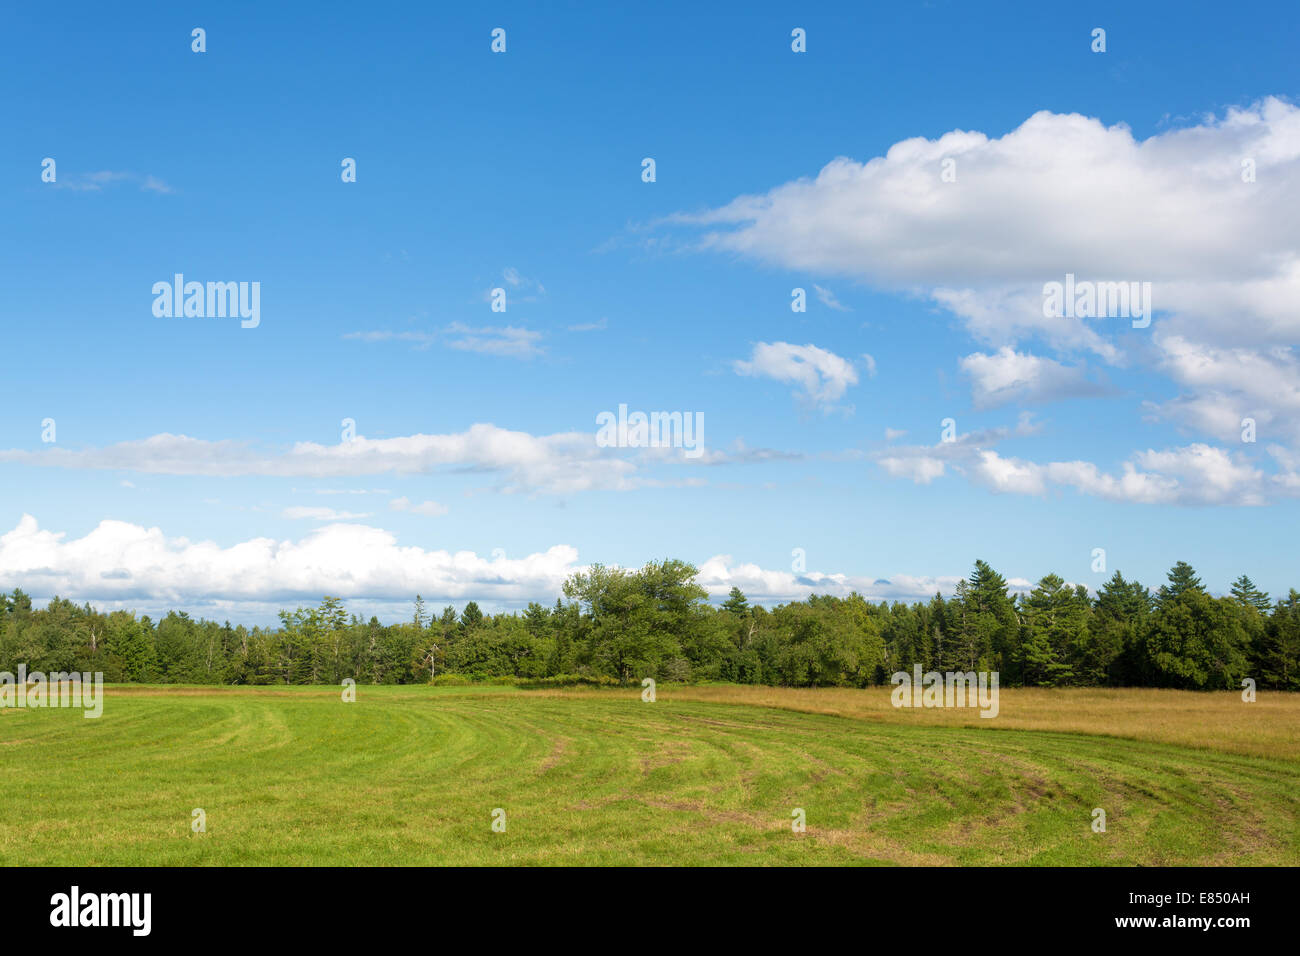 Ein Bauernhof-Feld in Maine, die teilweise mit weit entfernten Bäumen und bewölktem Himmel gemäht wurde. Stockfoto